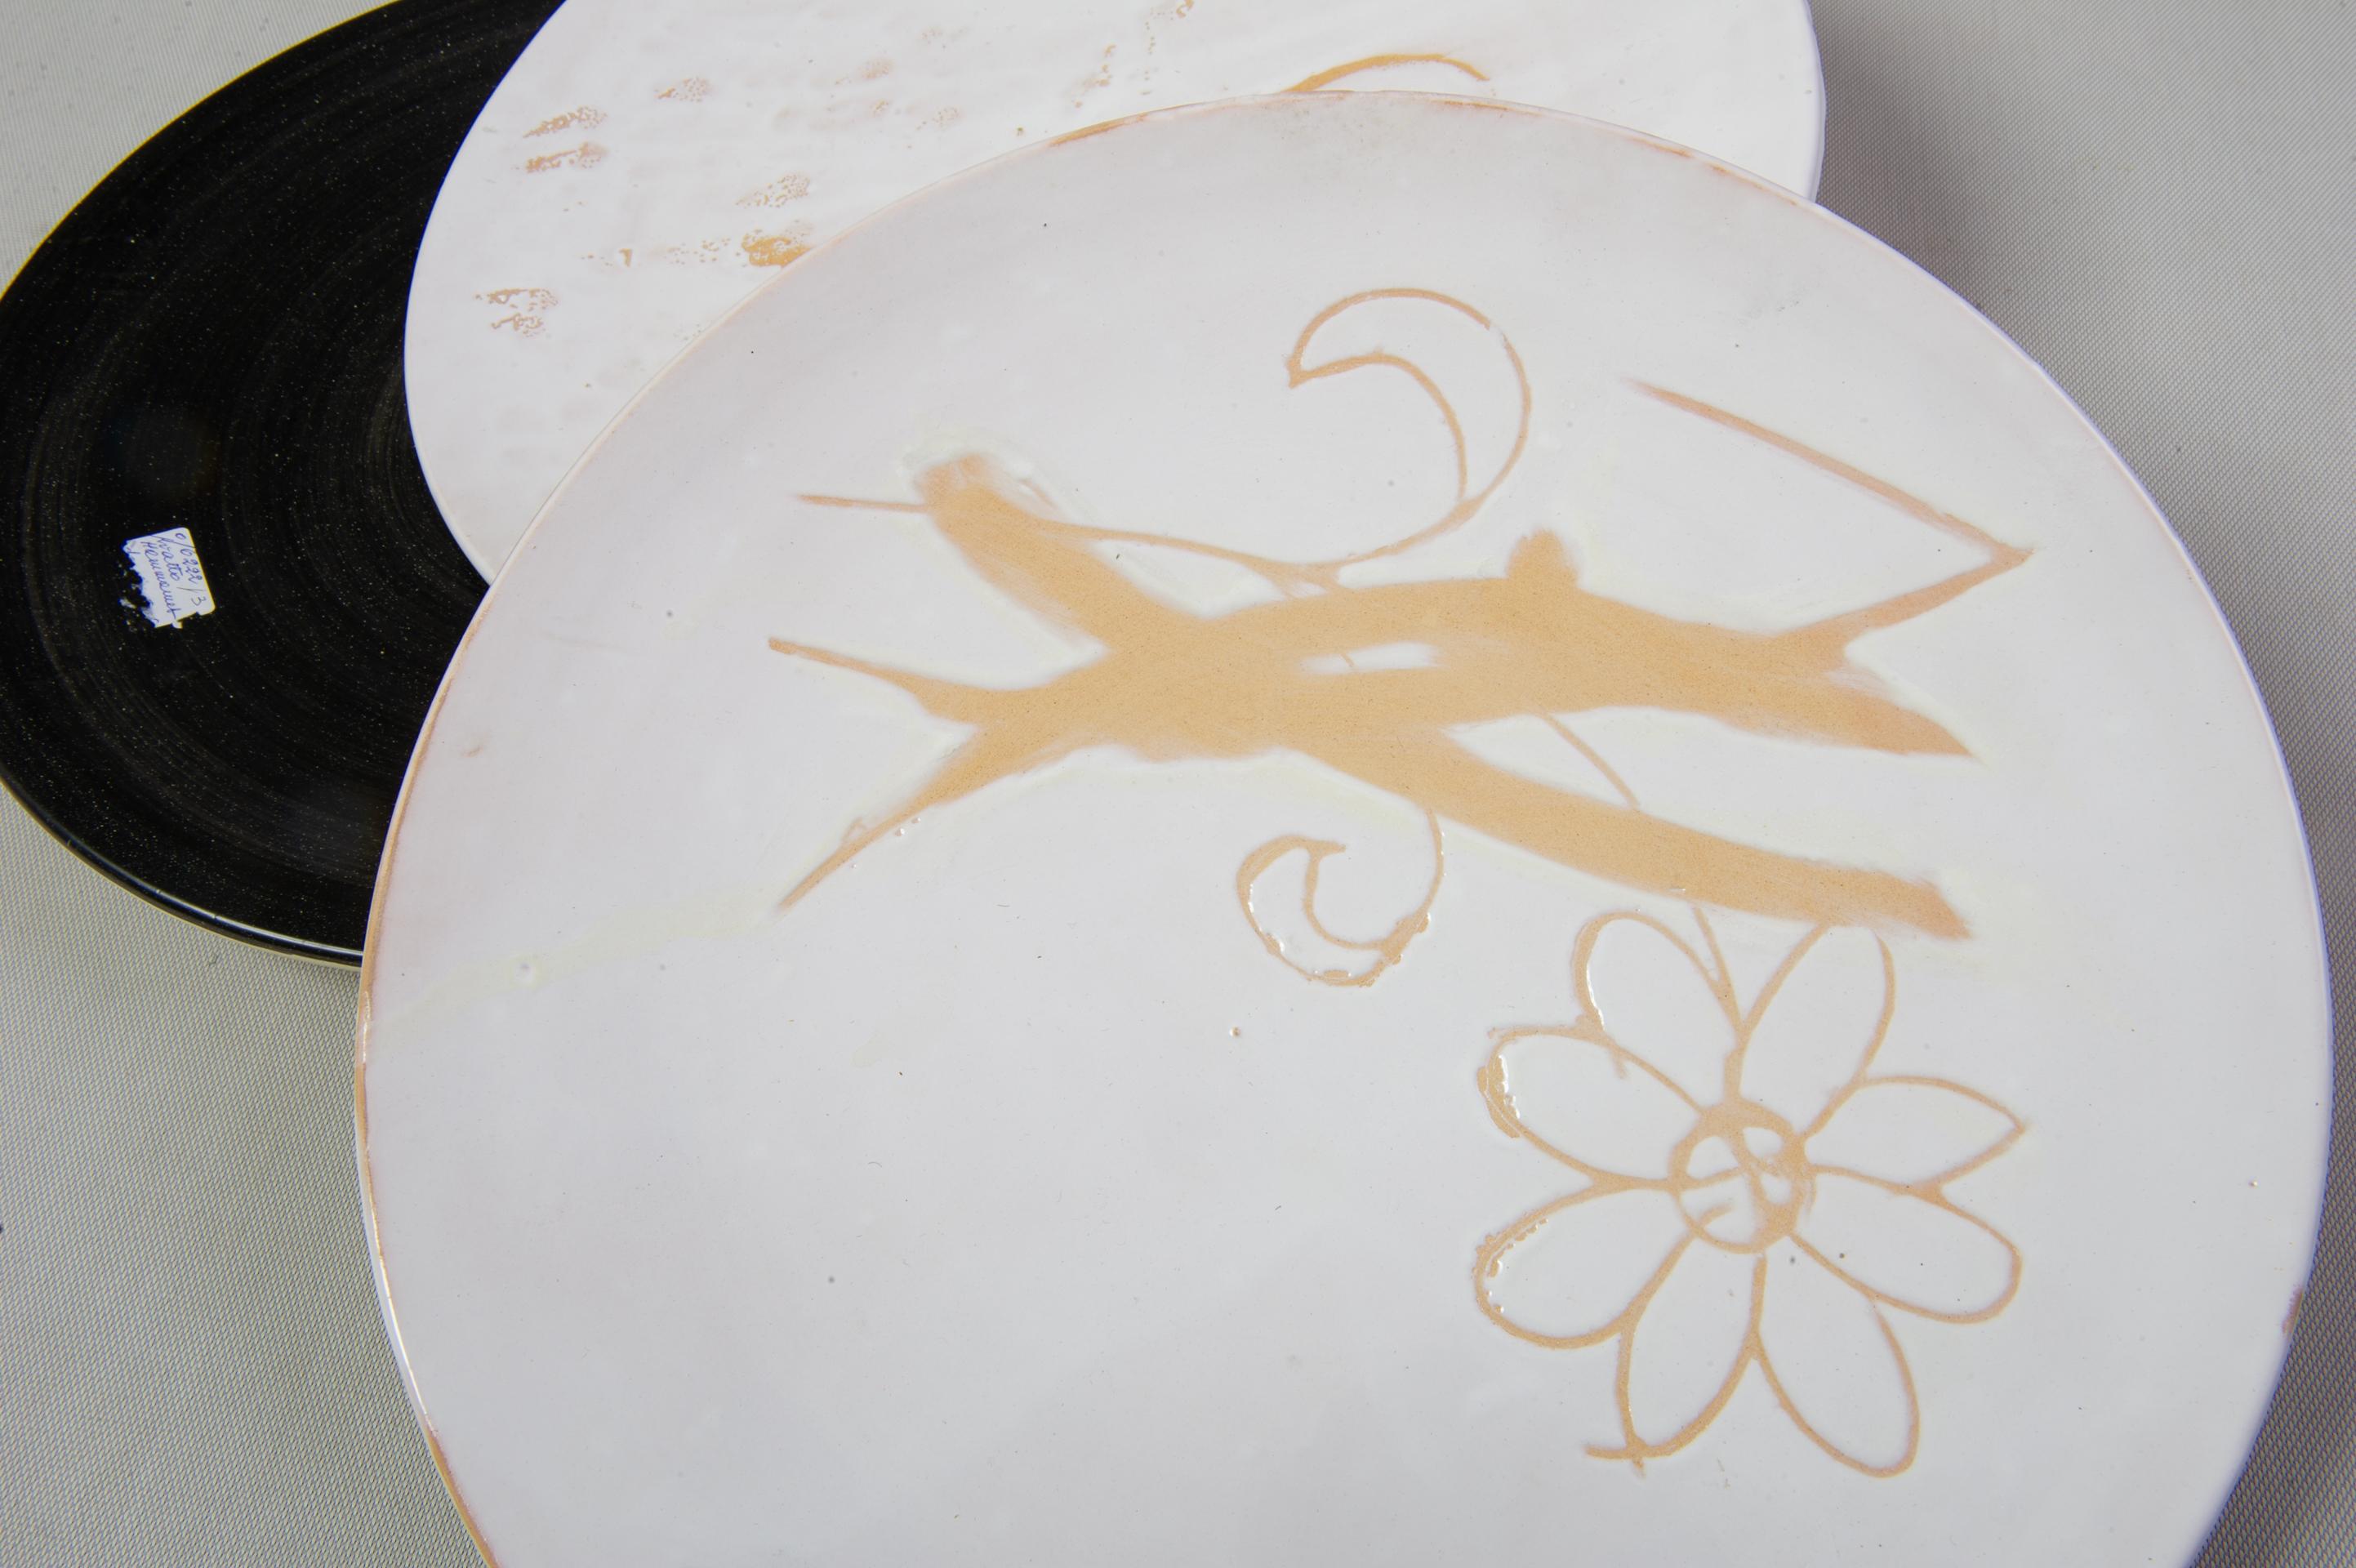 Grandes assiettes en céramique réalisées par un artiste tunisien en terre cuite émaillée au goût du jour.
Elles sont conçues pour être suspendues, mais peuvent également être utilisées à table. Elles se marient très bien avec la vaisselle